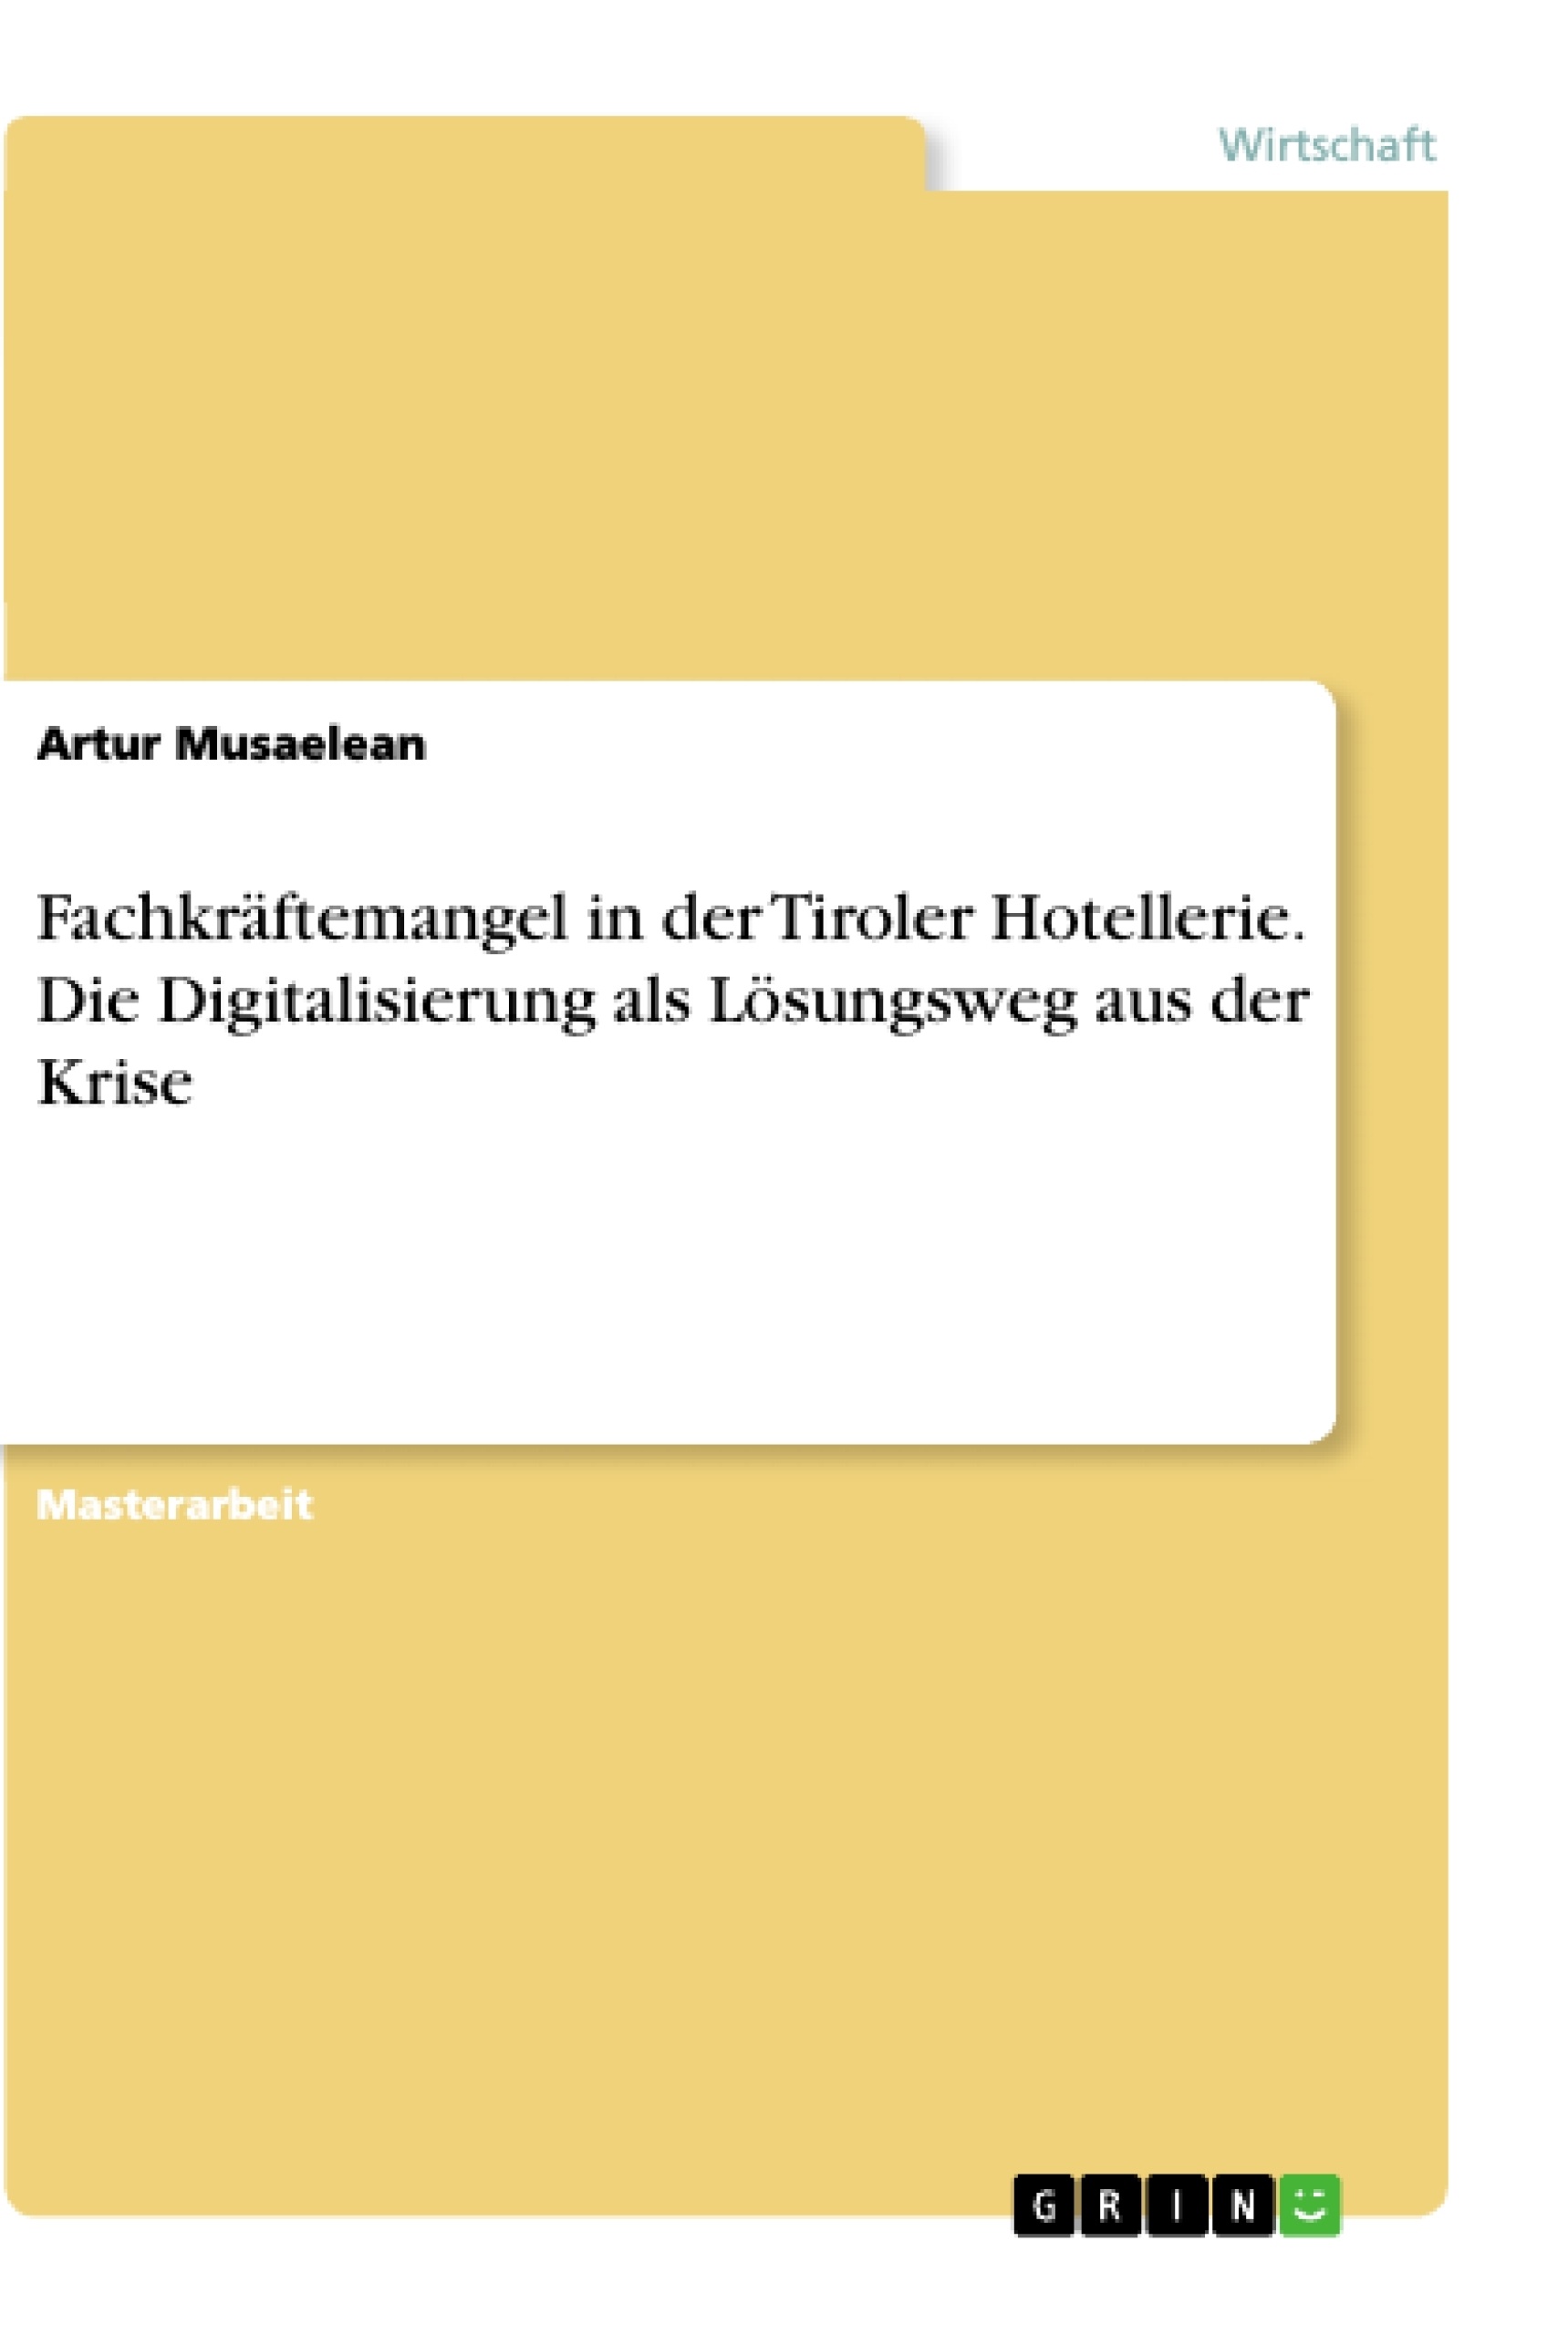 Titre: Fachkräftemangel in der Tiroler Hotellerie. Die Digitalisierung als Lösungsweg aus der Krise